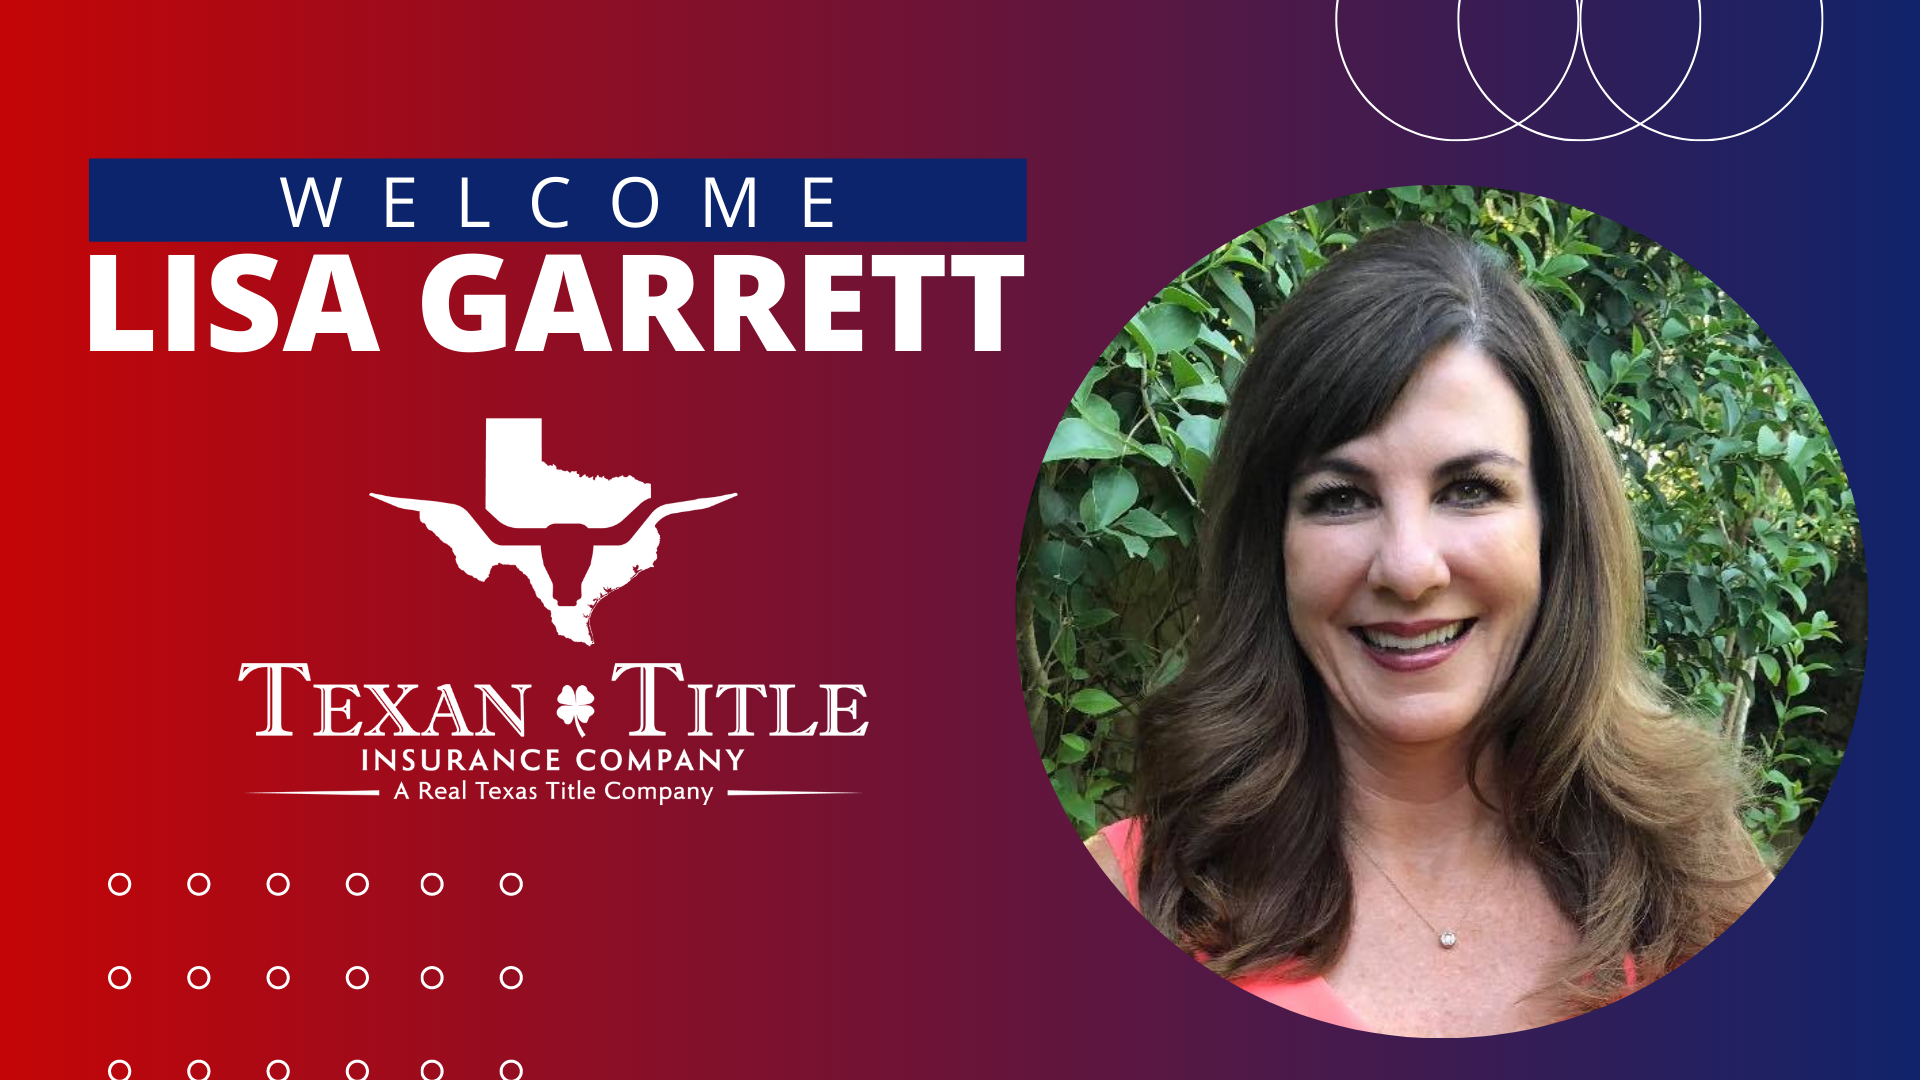 Lisa Garrett joins Texan Title Insurance